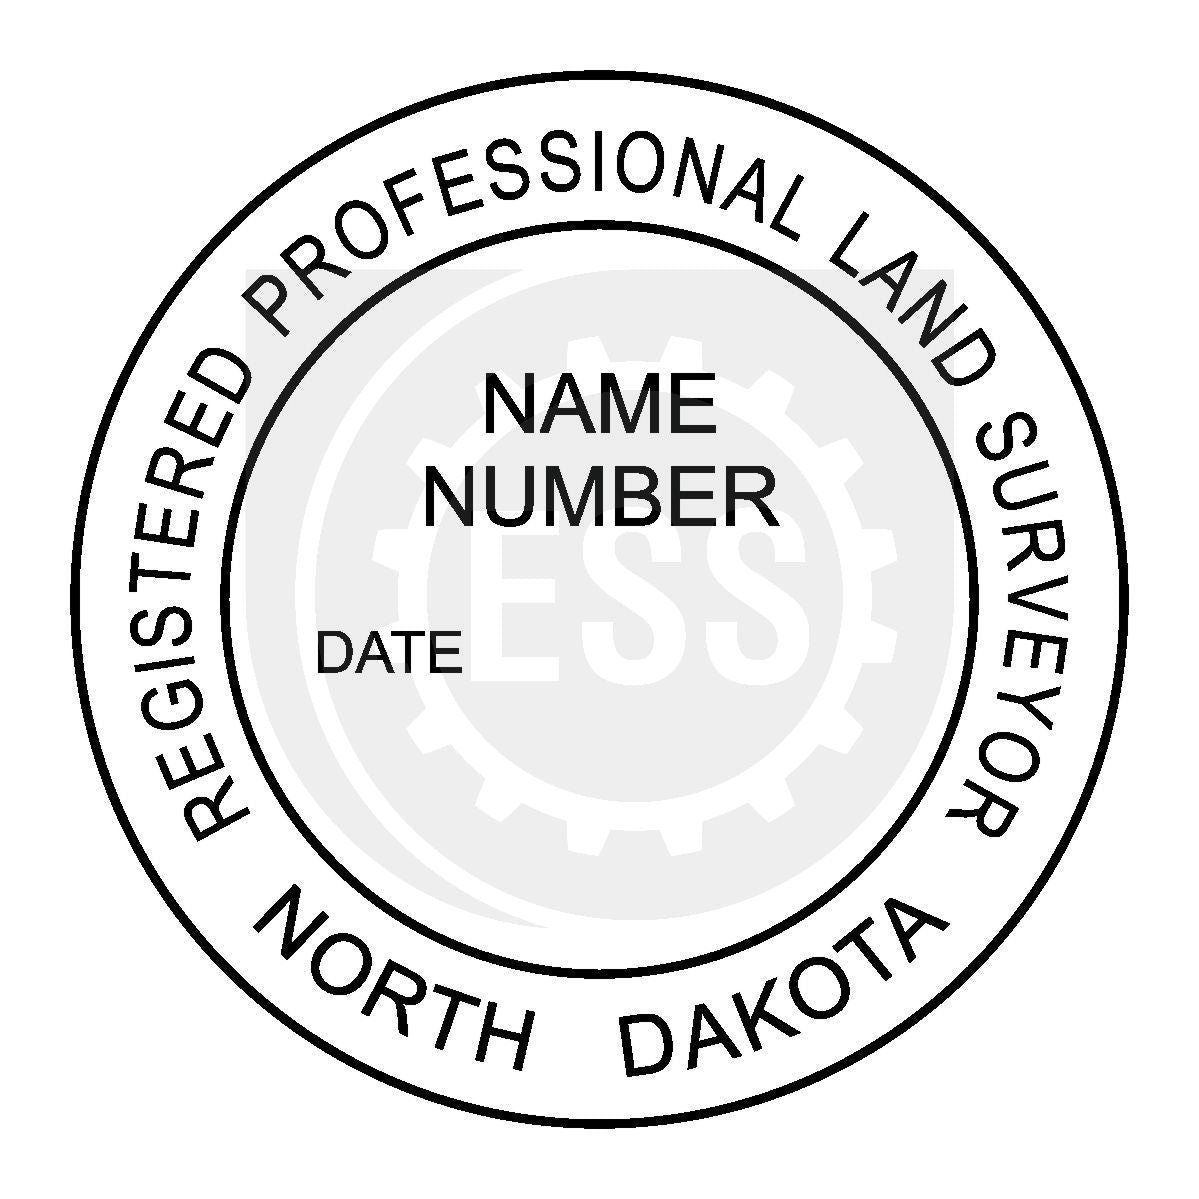 North Dakota Land Surveyor Seal Setup